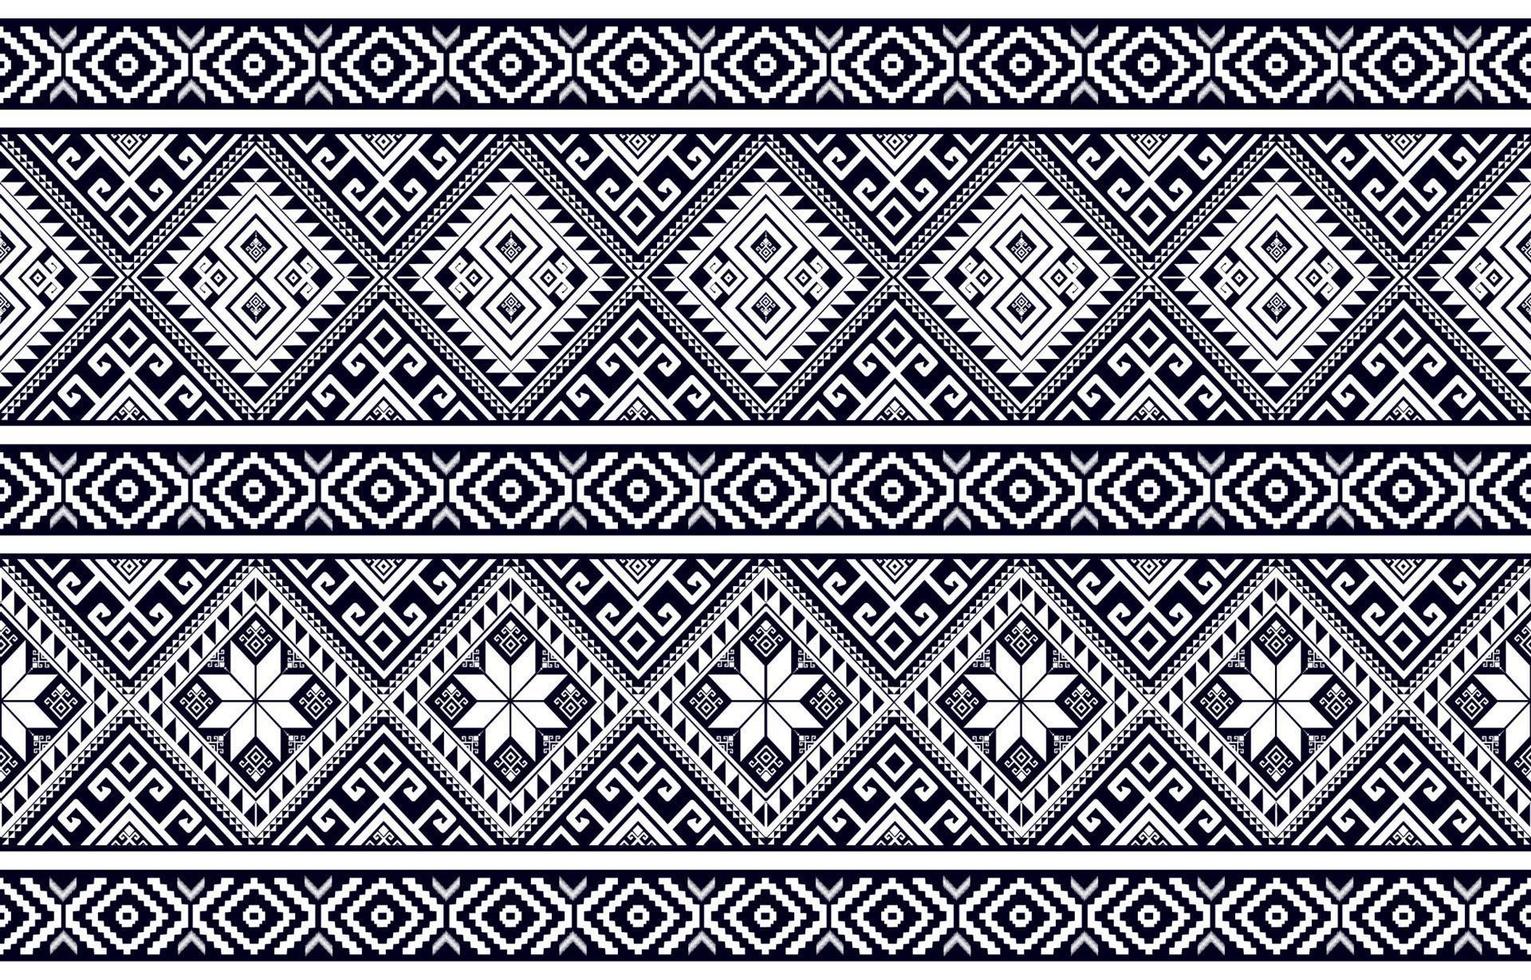 patrón étnico geométrico abstracto en blanco y negro occidental, alquiler de indios americanos en áfrica. para alfombra, papel tapiz, ropa, envoltura, batik, tela, azulejo, telón de fondo, ilustración vectorial. estilo de bordado vector